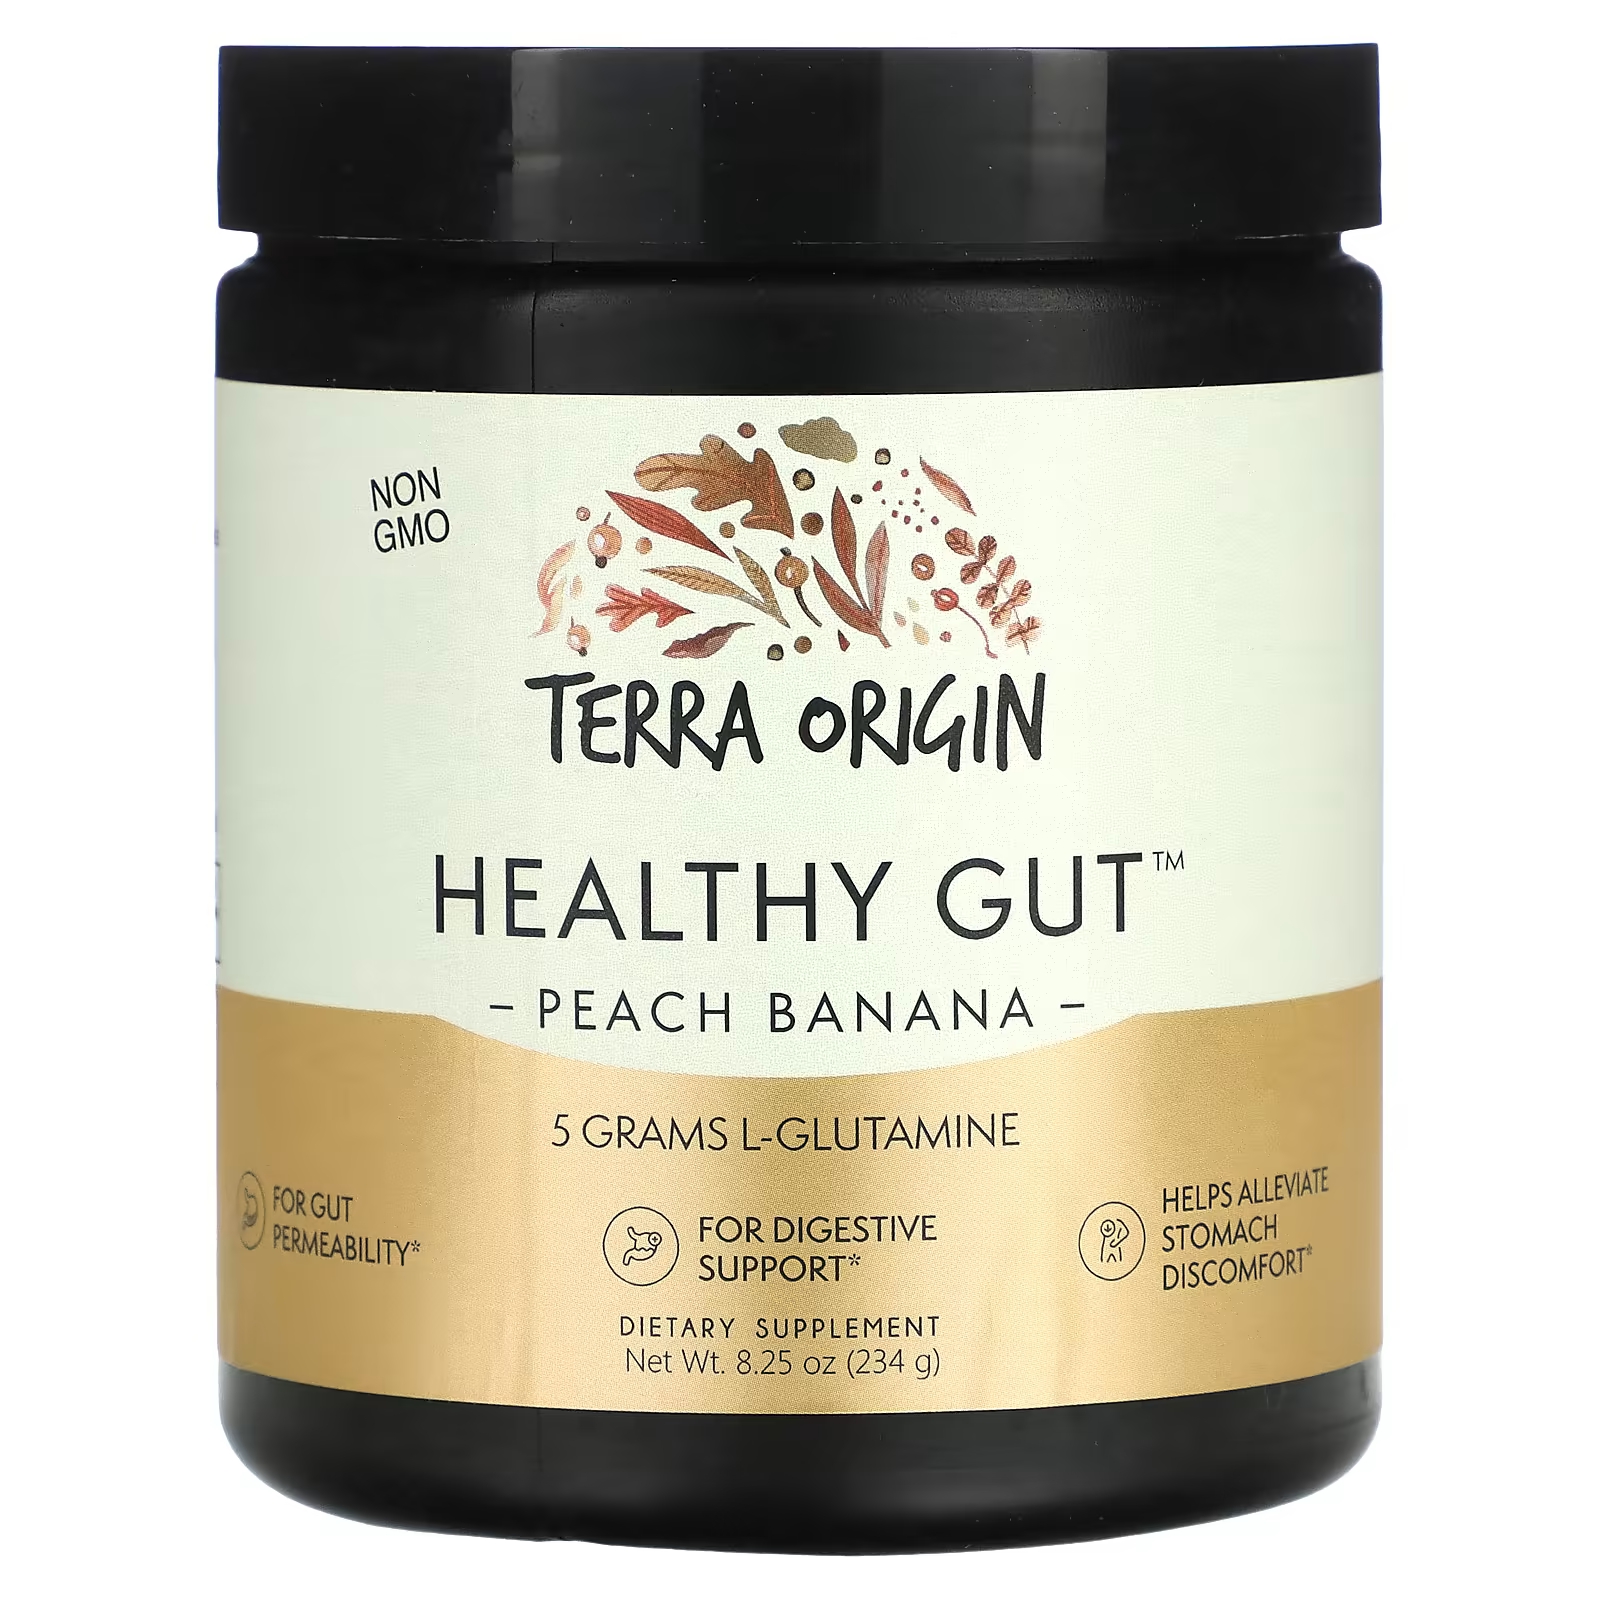 Пищевая добавка Terra Origin Healthy Gut персик и банан, 234 г пищевая добавка terra origin для здорового кишечника 243 г